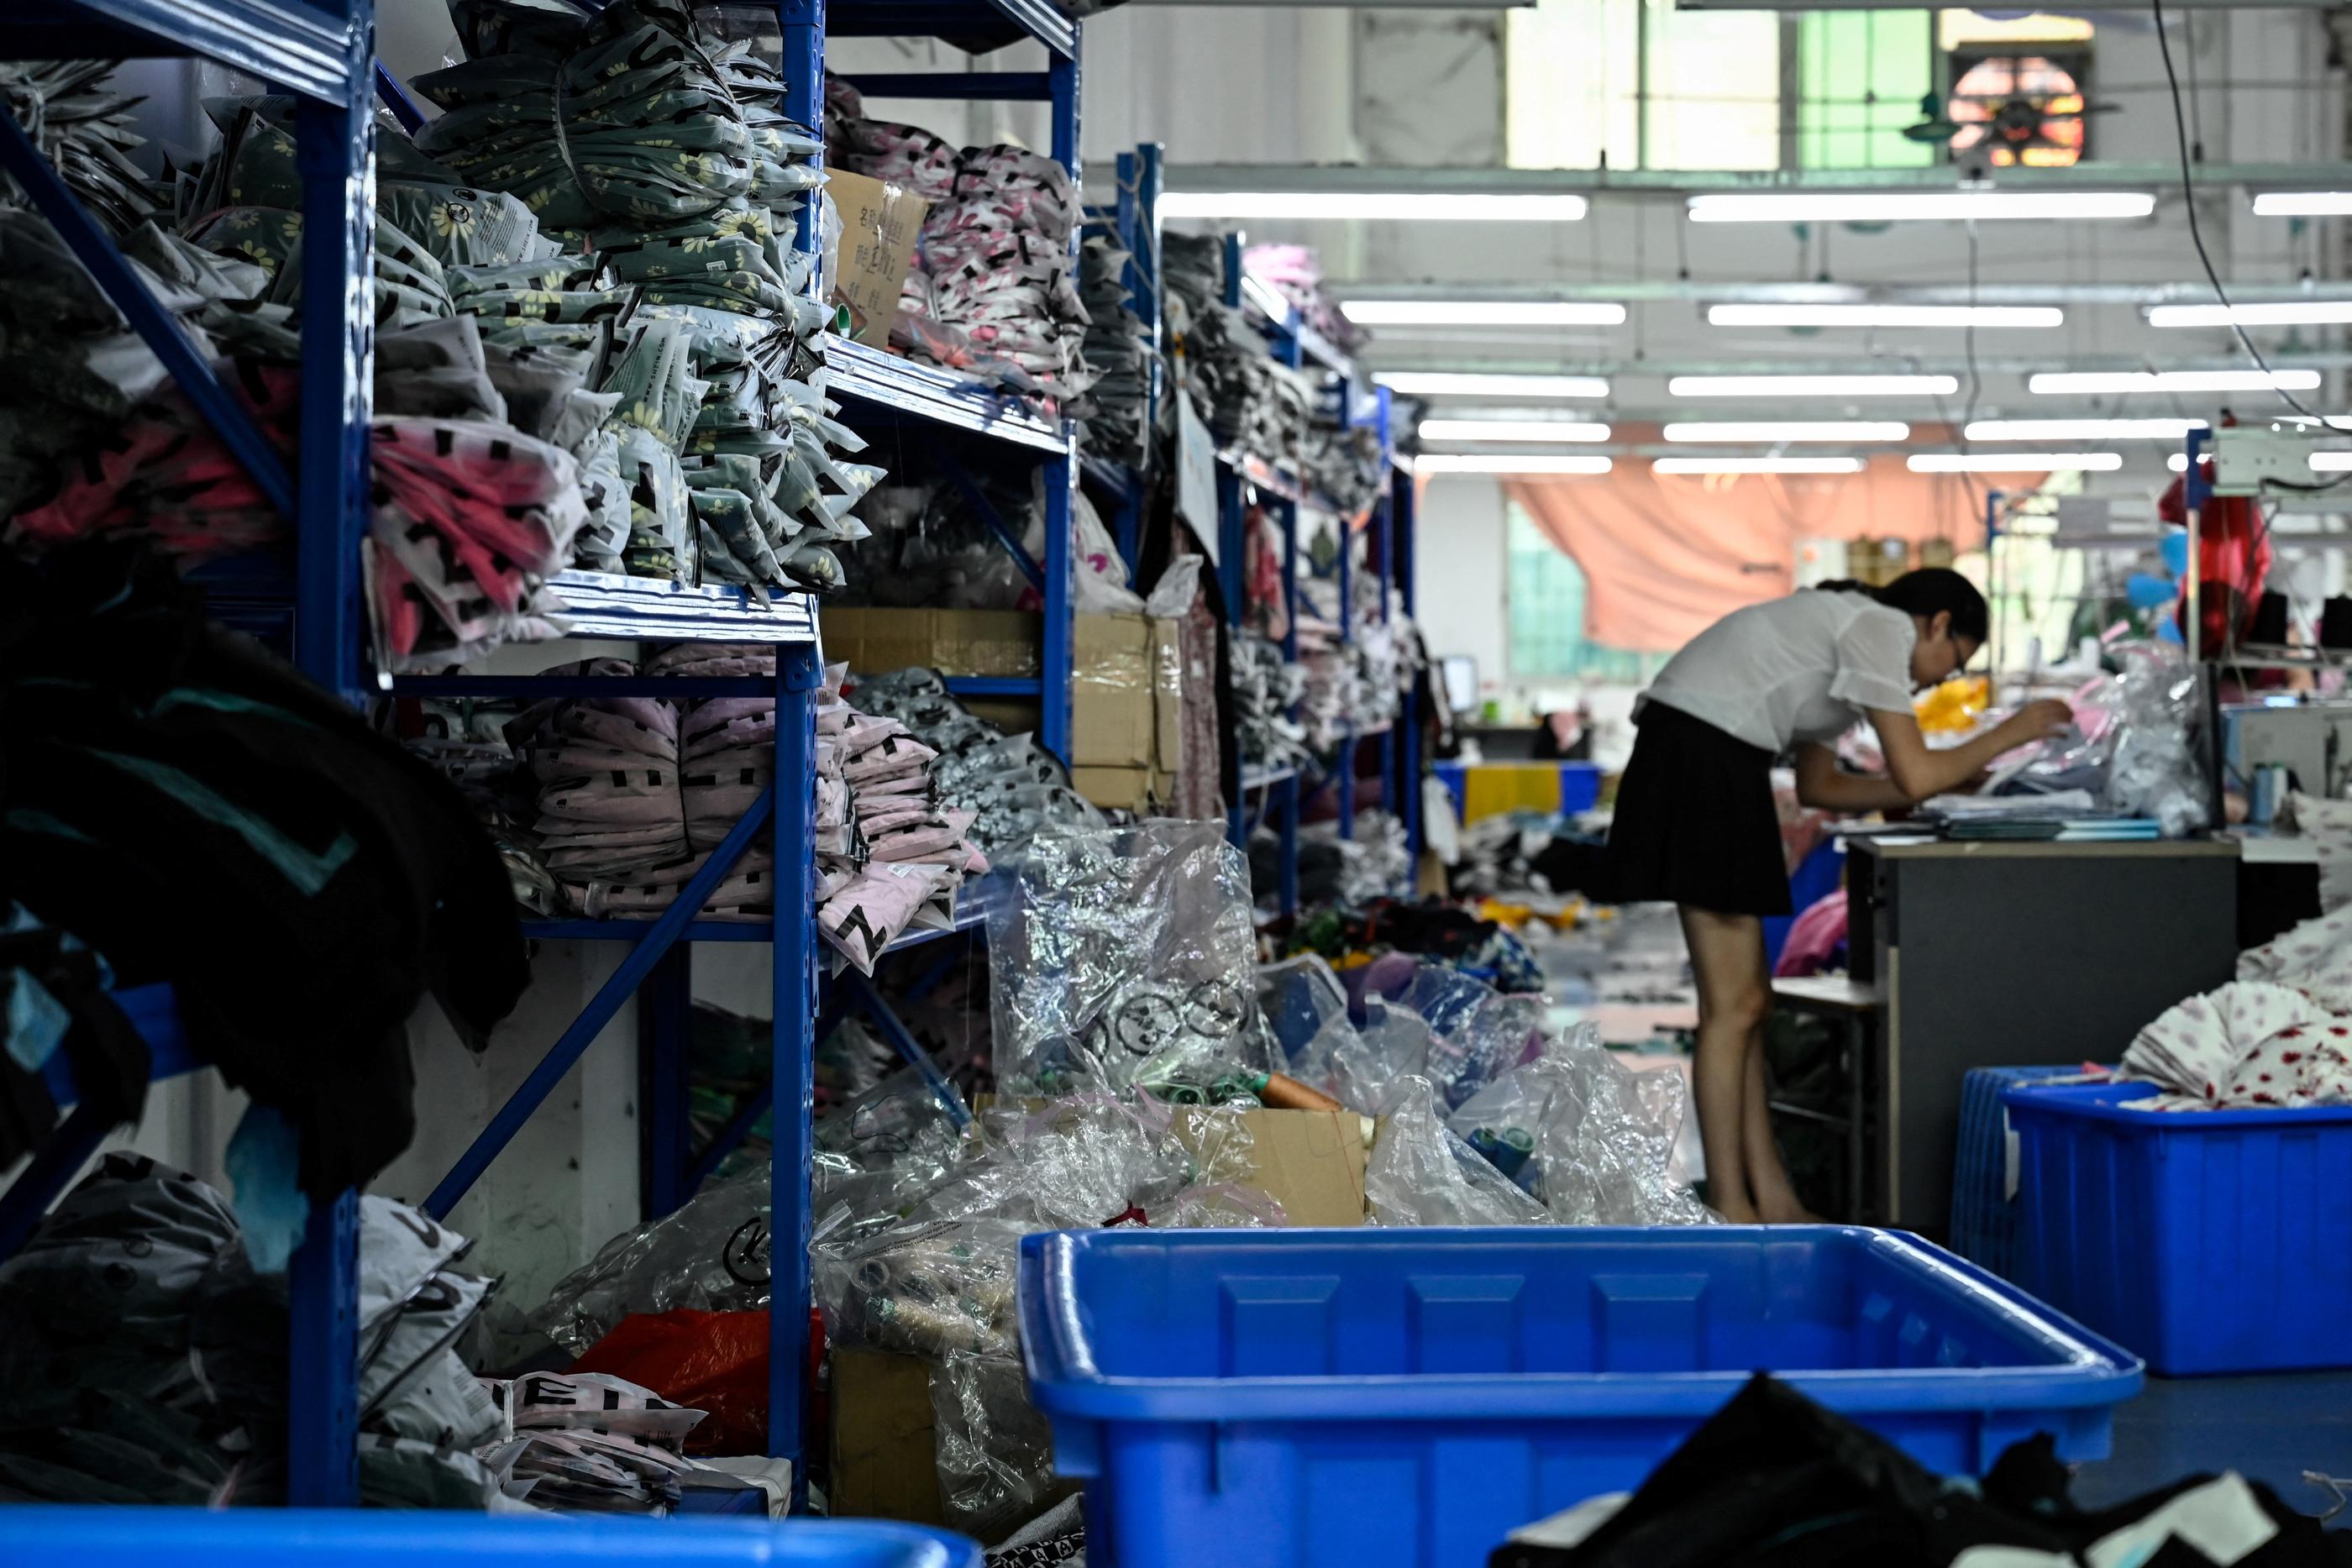 Avec 6000 sous-traitants rien qu'en Chine, la marque peut produire vite et à bas coût. Mais les conditions des salariés (salaires modiques et horaires à rallonge) sont régulièrement dénoncées par des organisations. AFP/Jade Gao